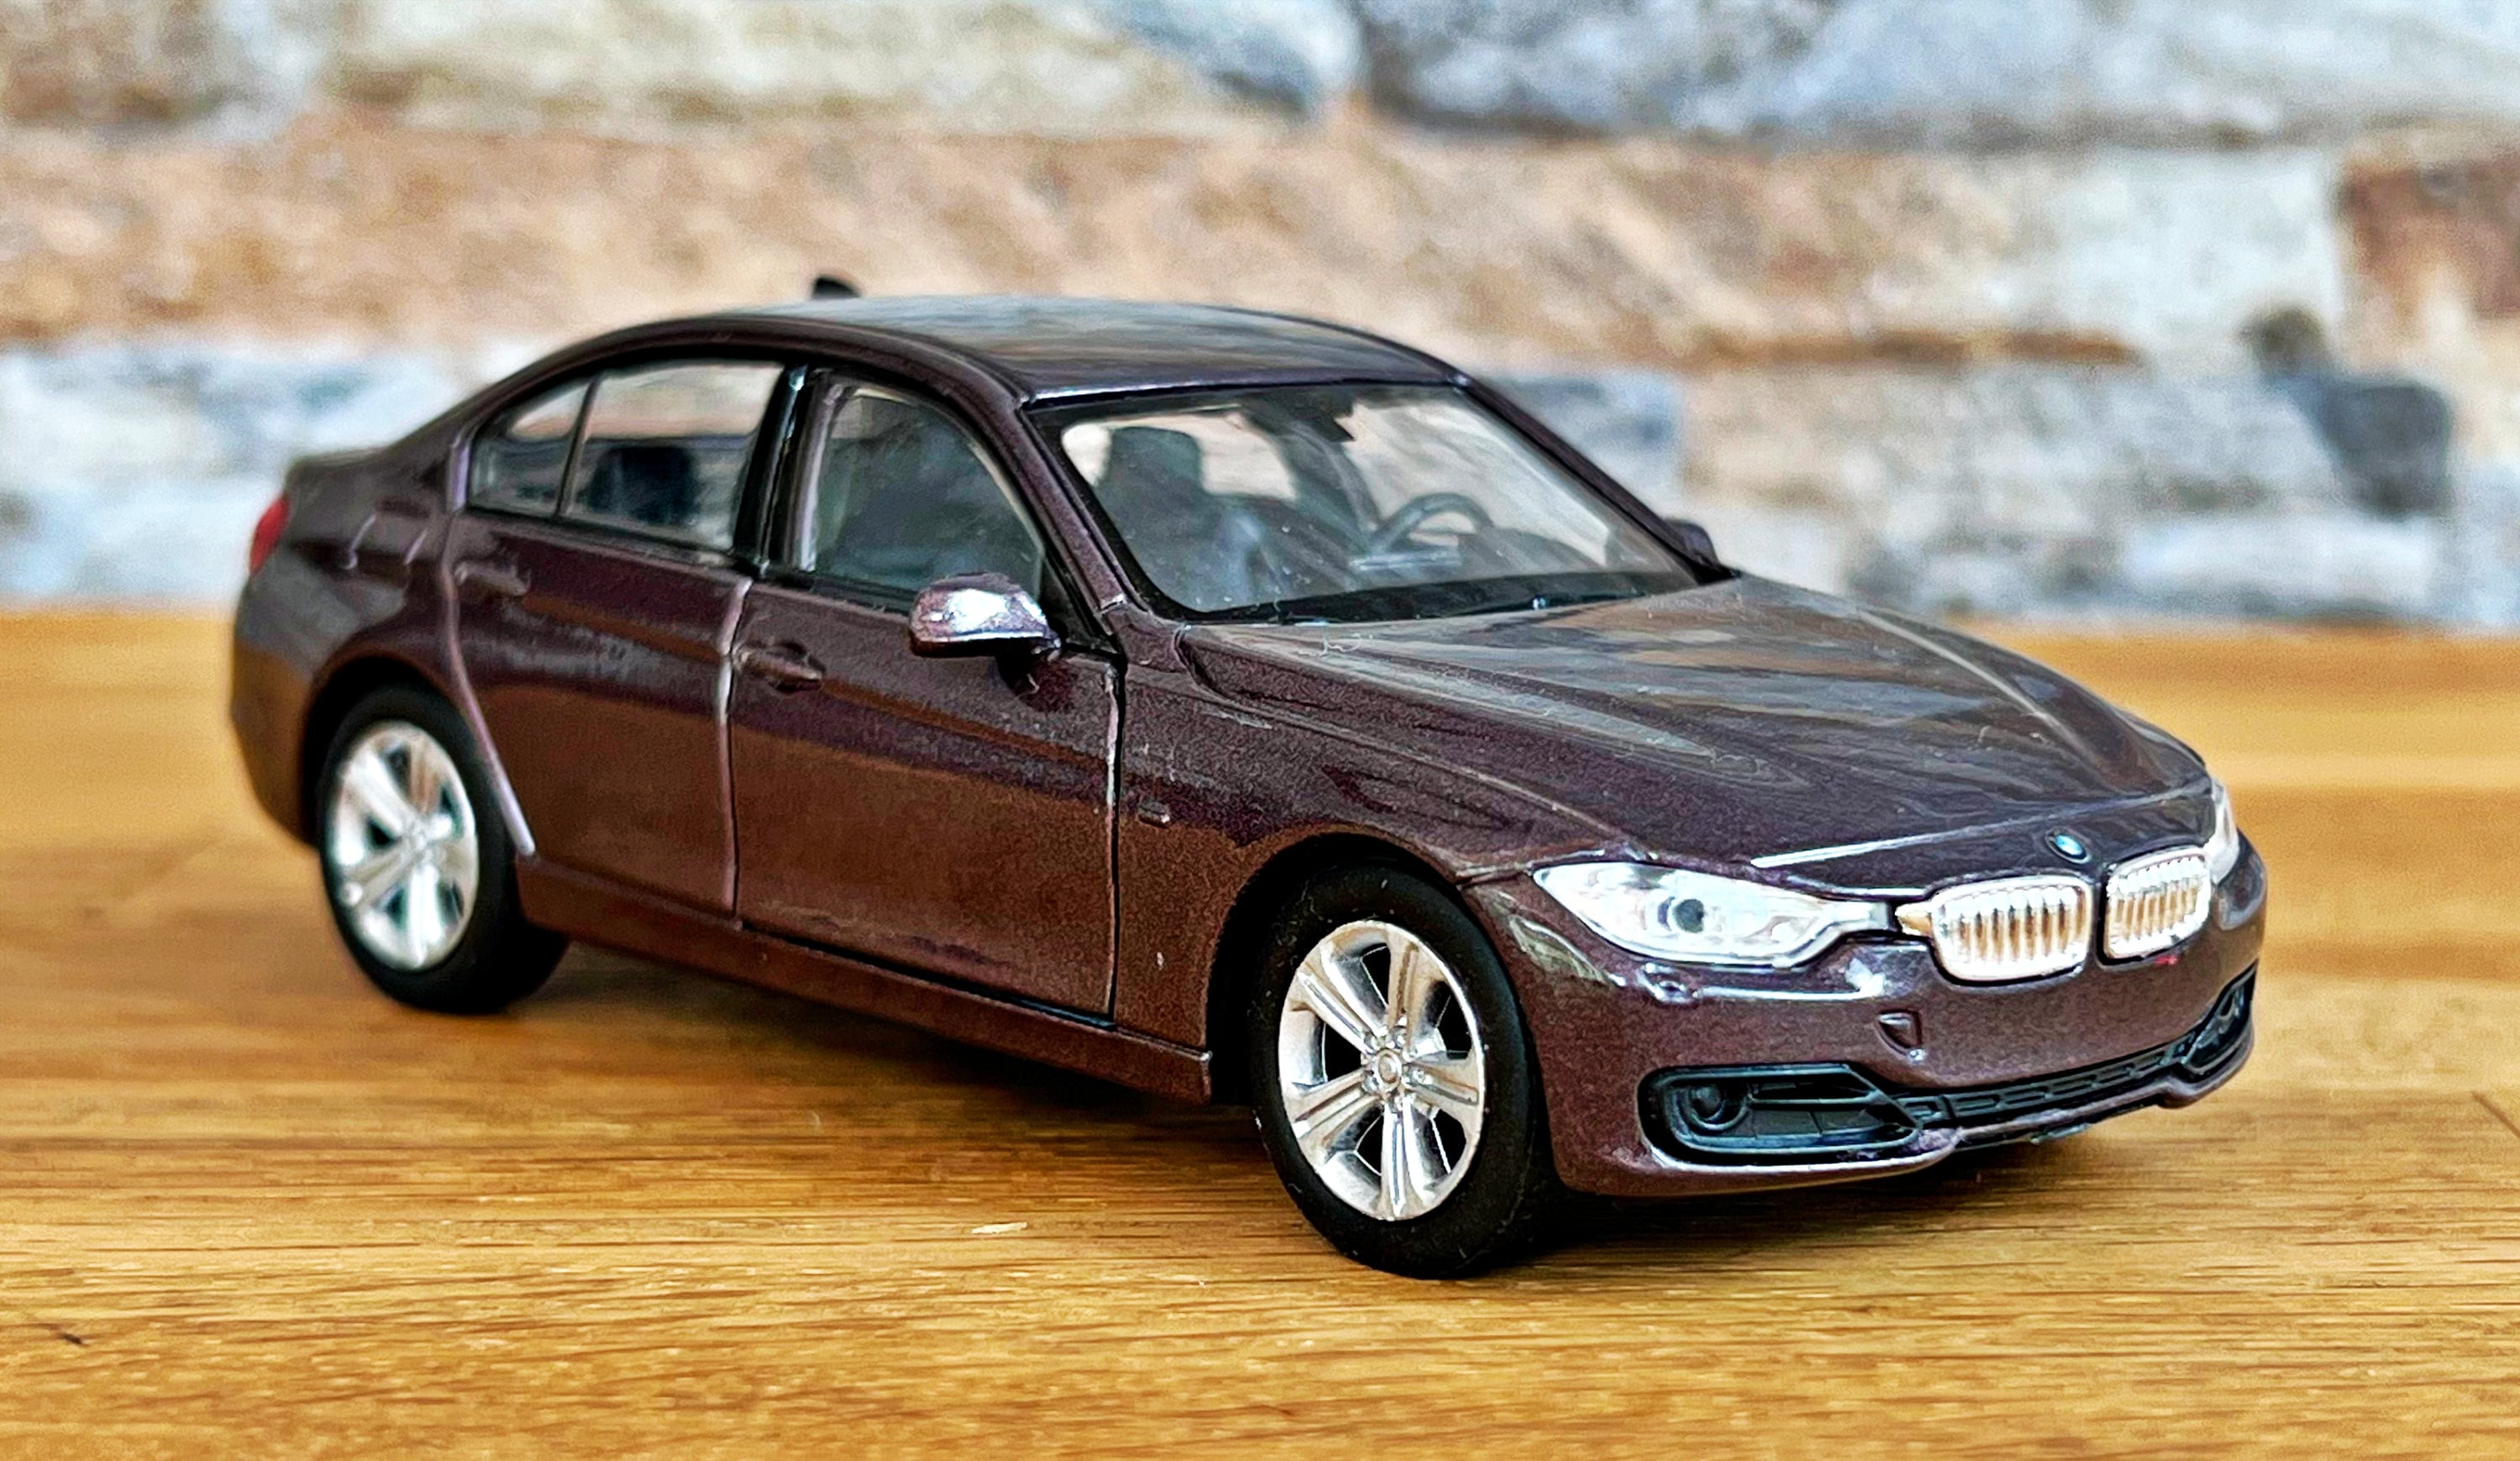 BMW 335 i 1/36 Diecast Modellauto Modellauto im Maßstab 1:36 Automodell  Metall Diecast Sammelobjekt BMW Modellauto - .de